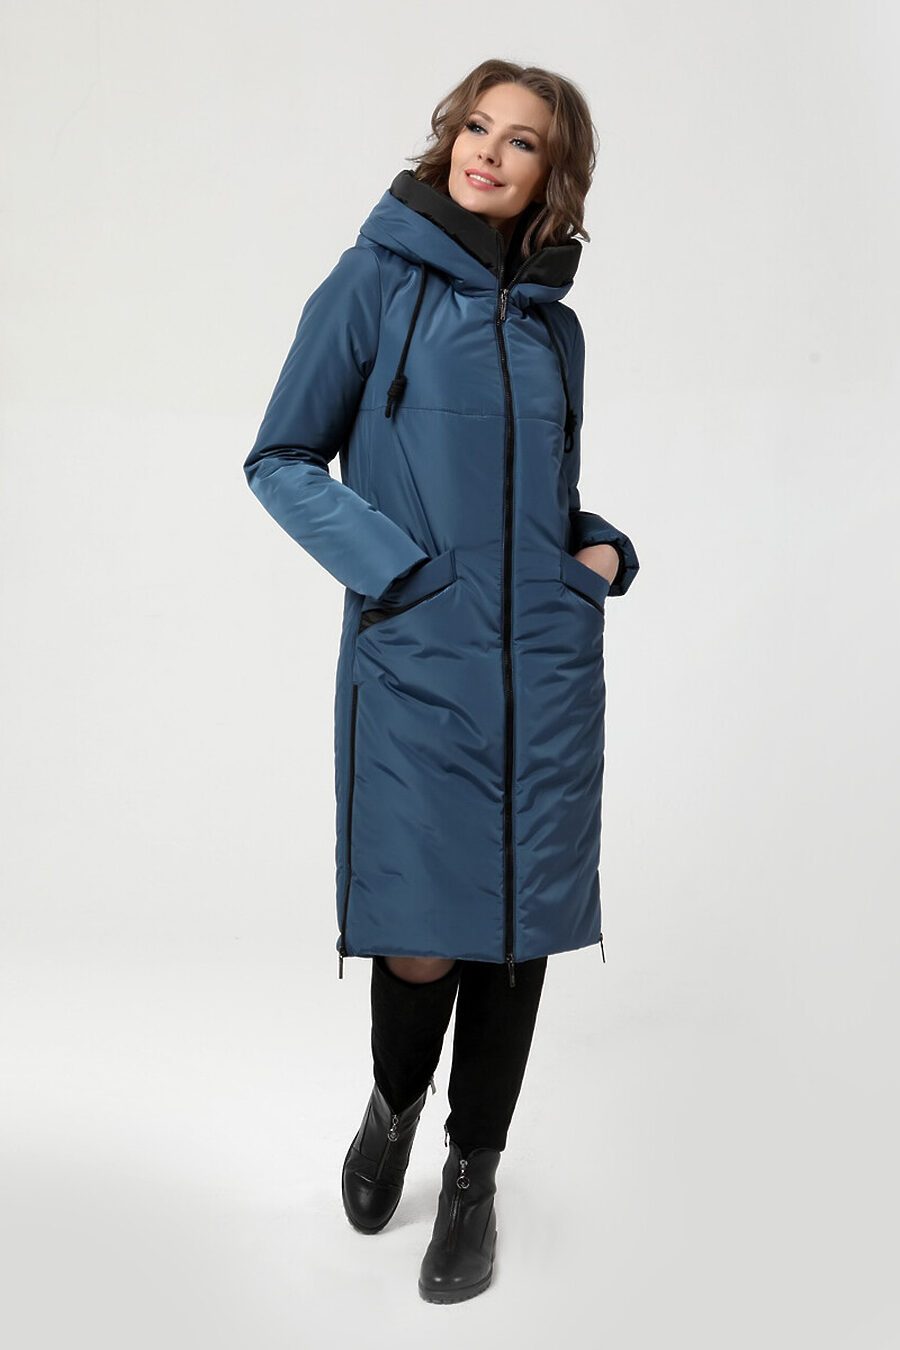 Пальто DIWAY (684789), купить в Moyo.moda